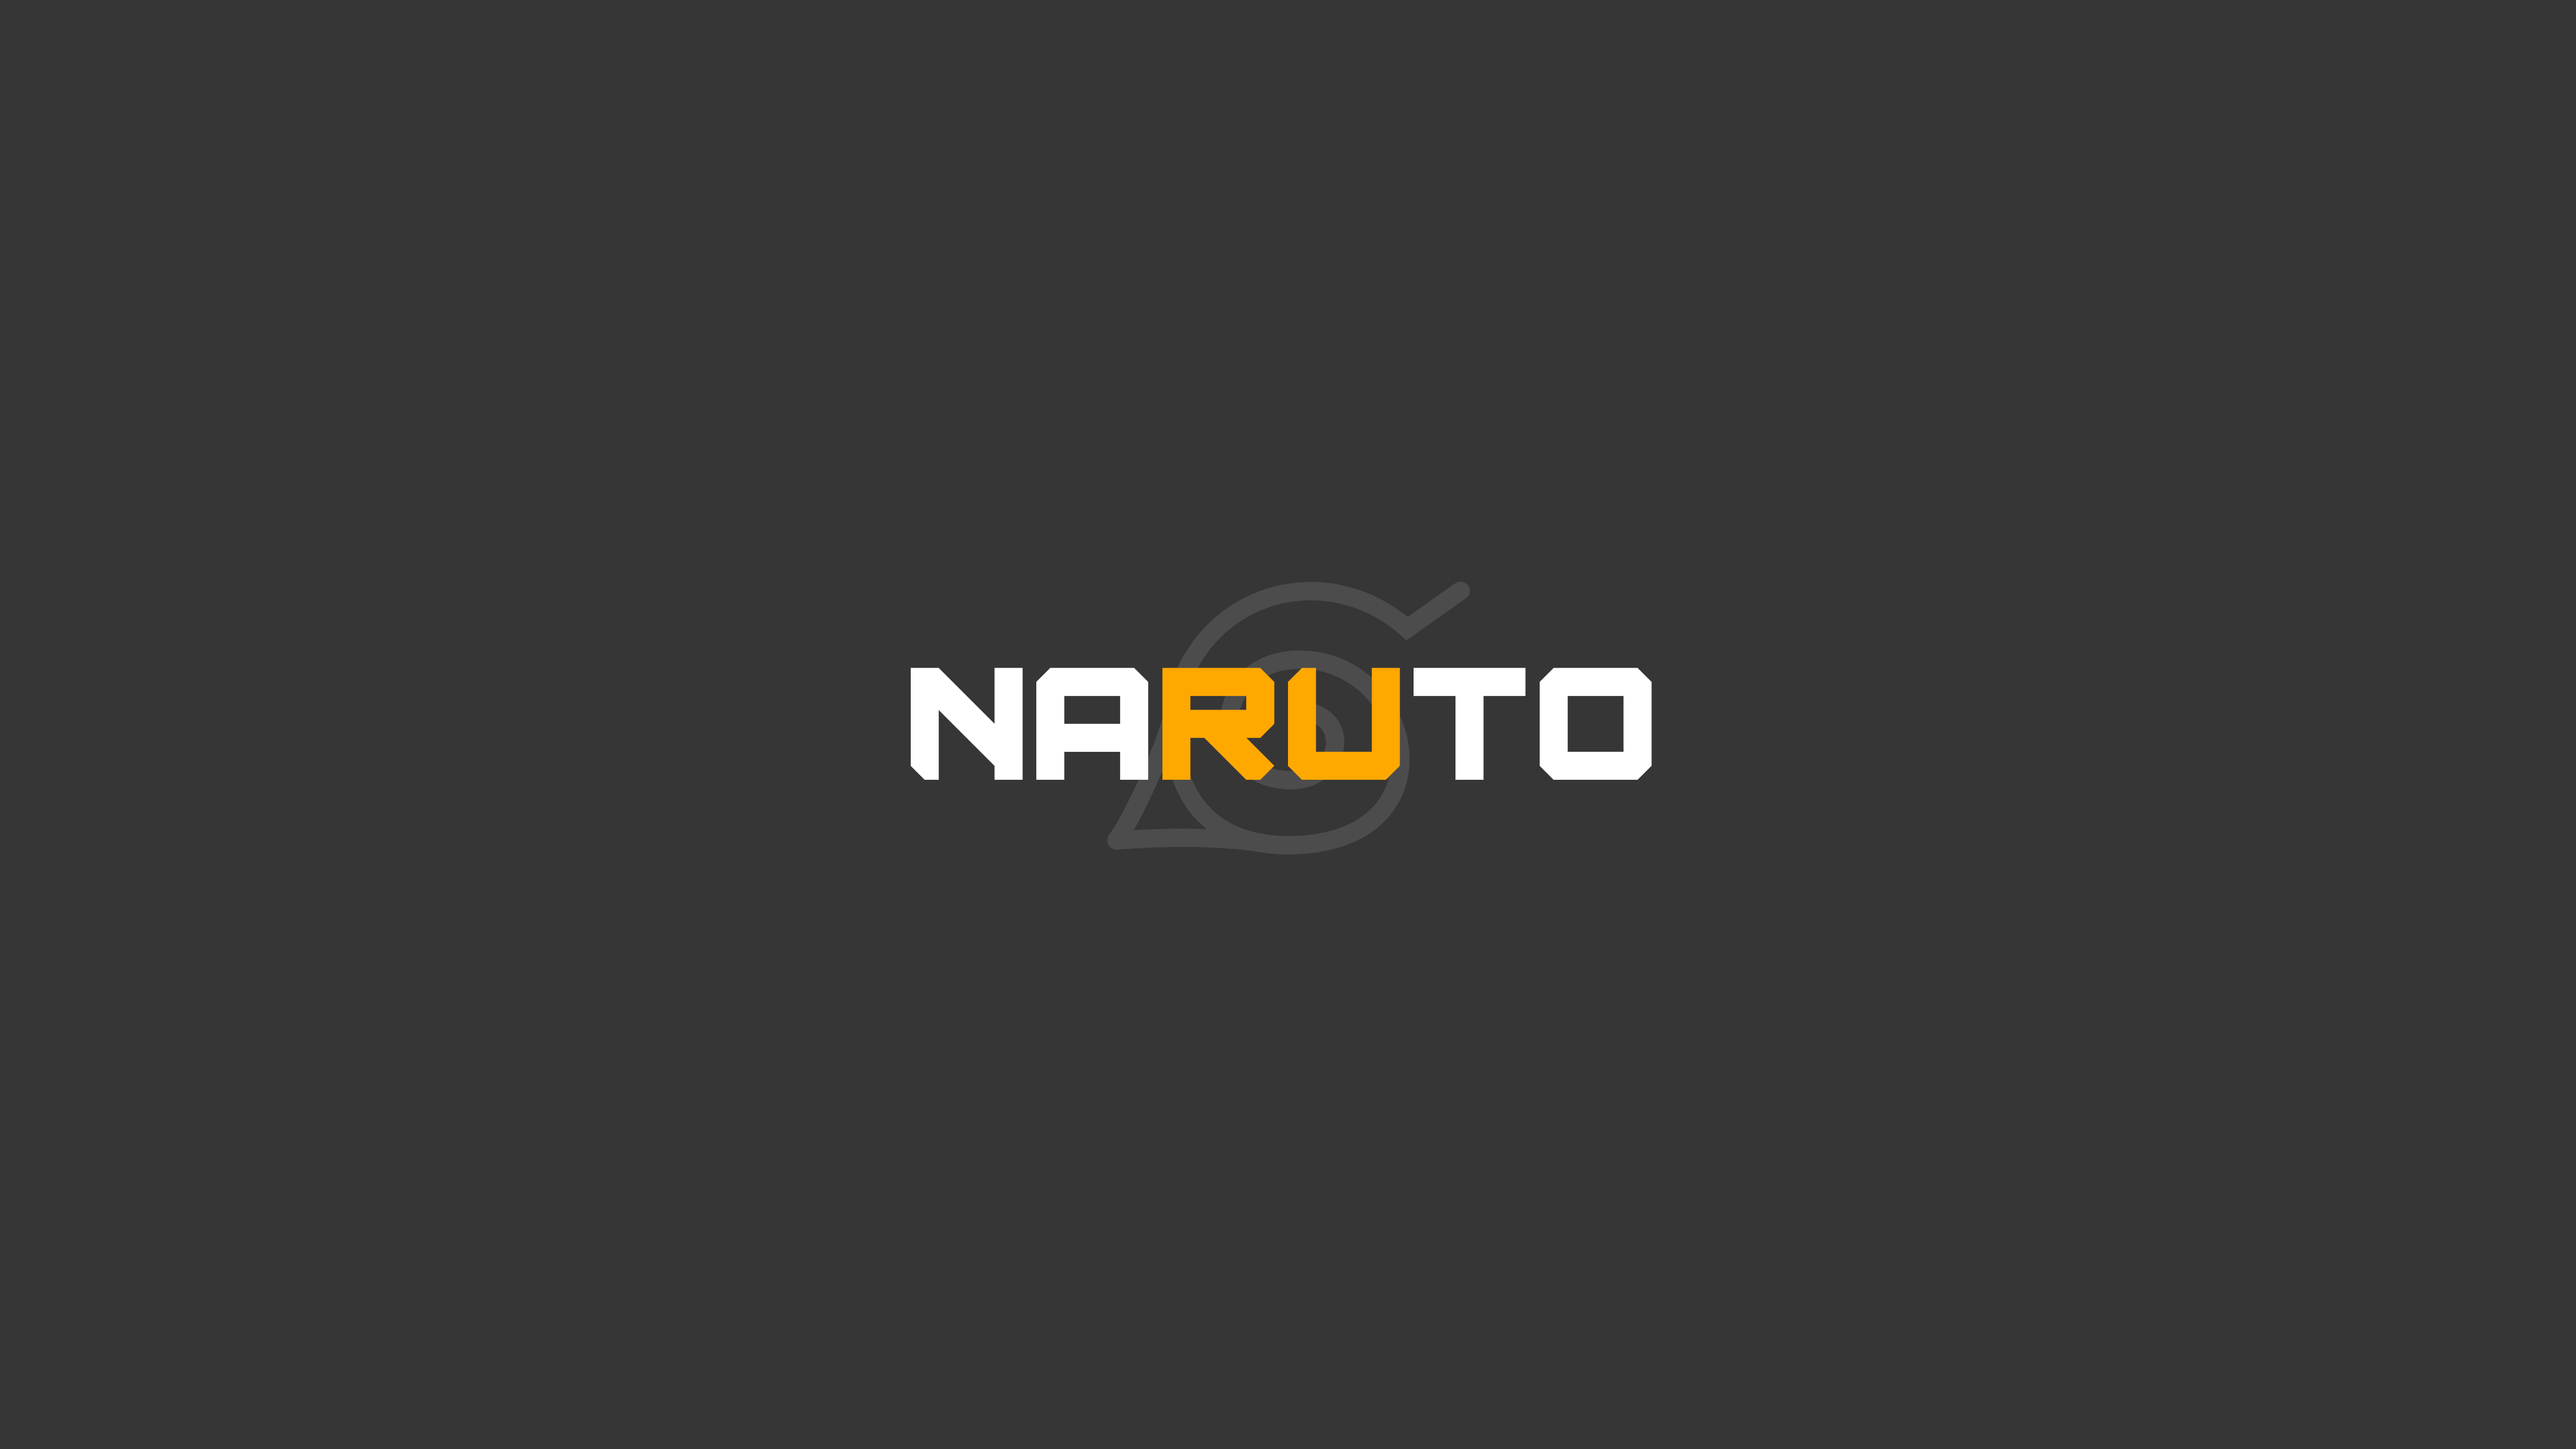 Naruto Hidden Leaf Vilage logo 4k Ultra HD Wallpaper. Background